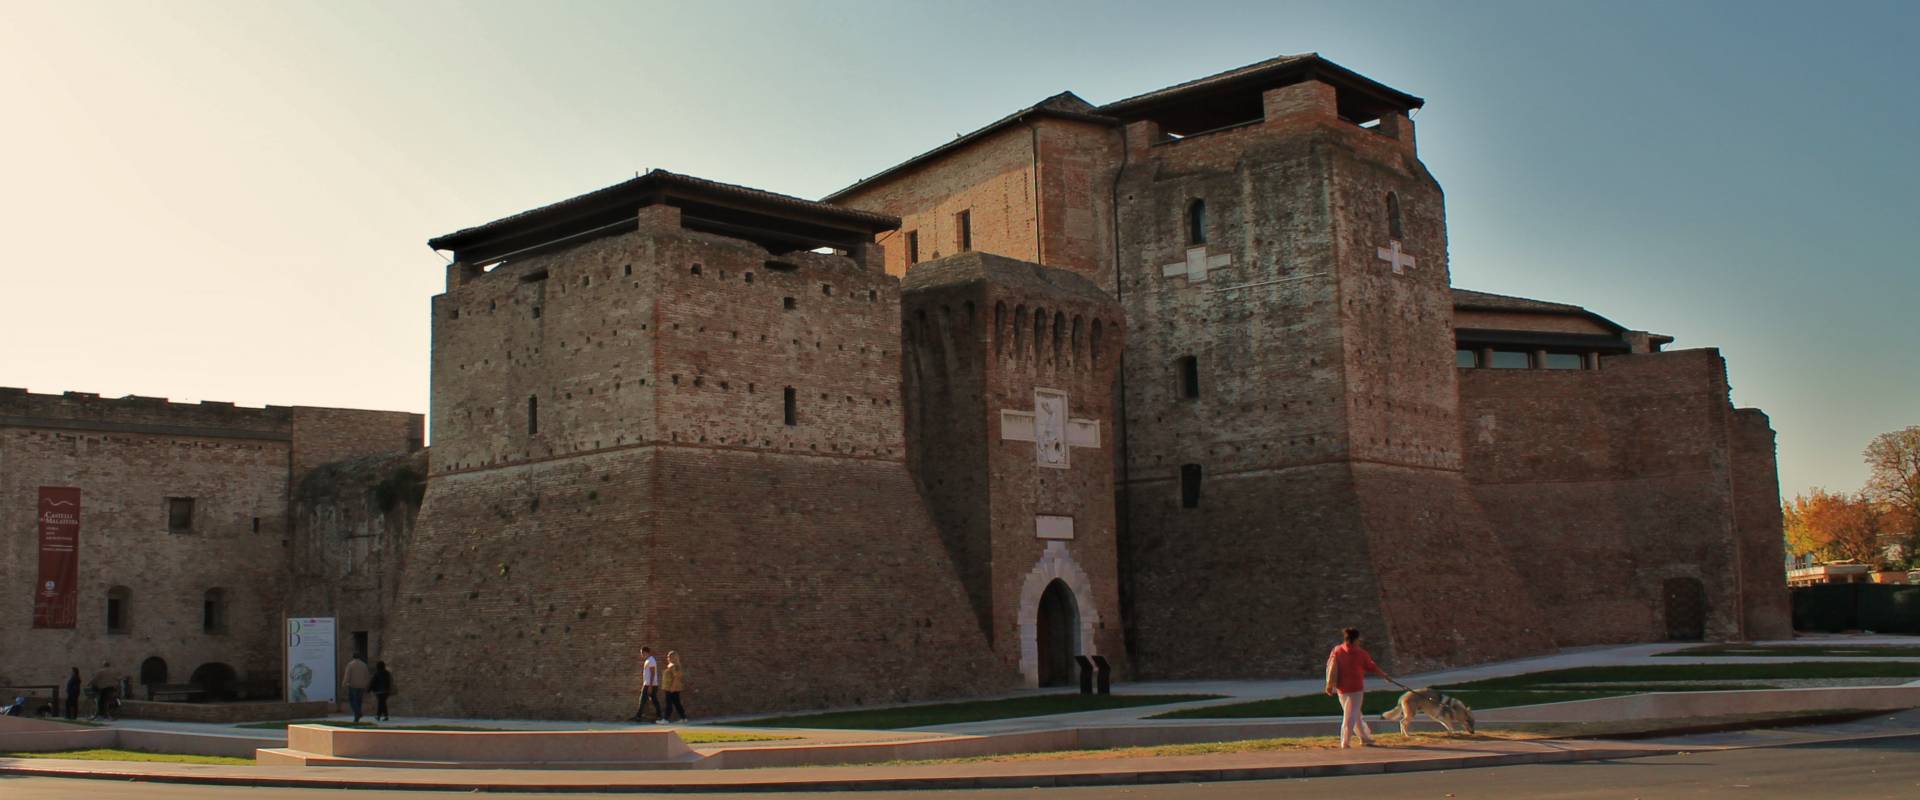 Castel Sismondo di Rimini foto di Thomass1995